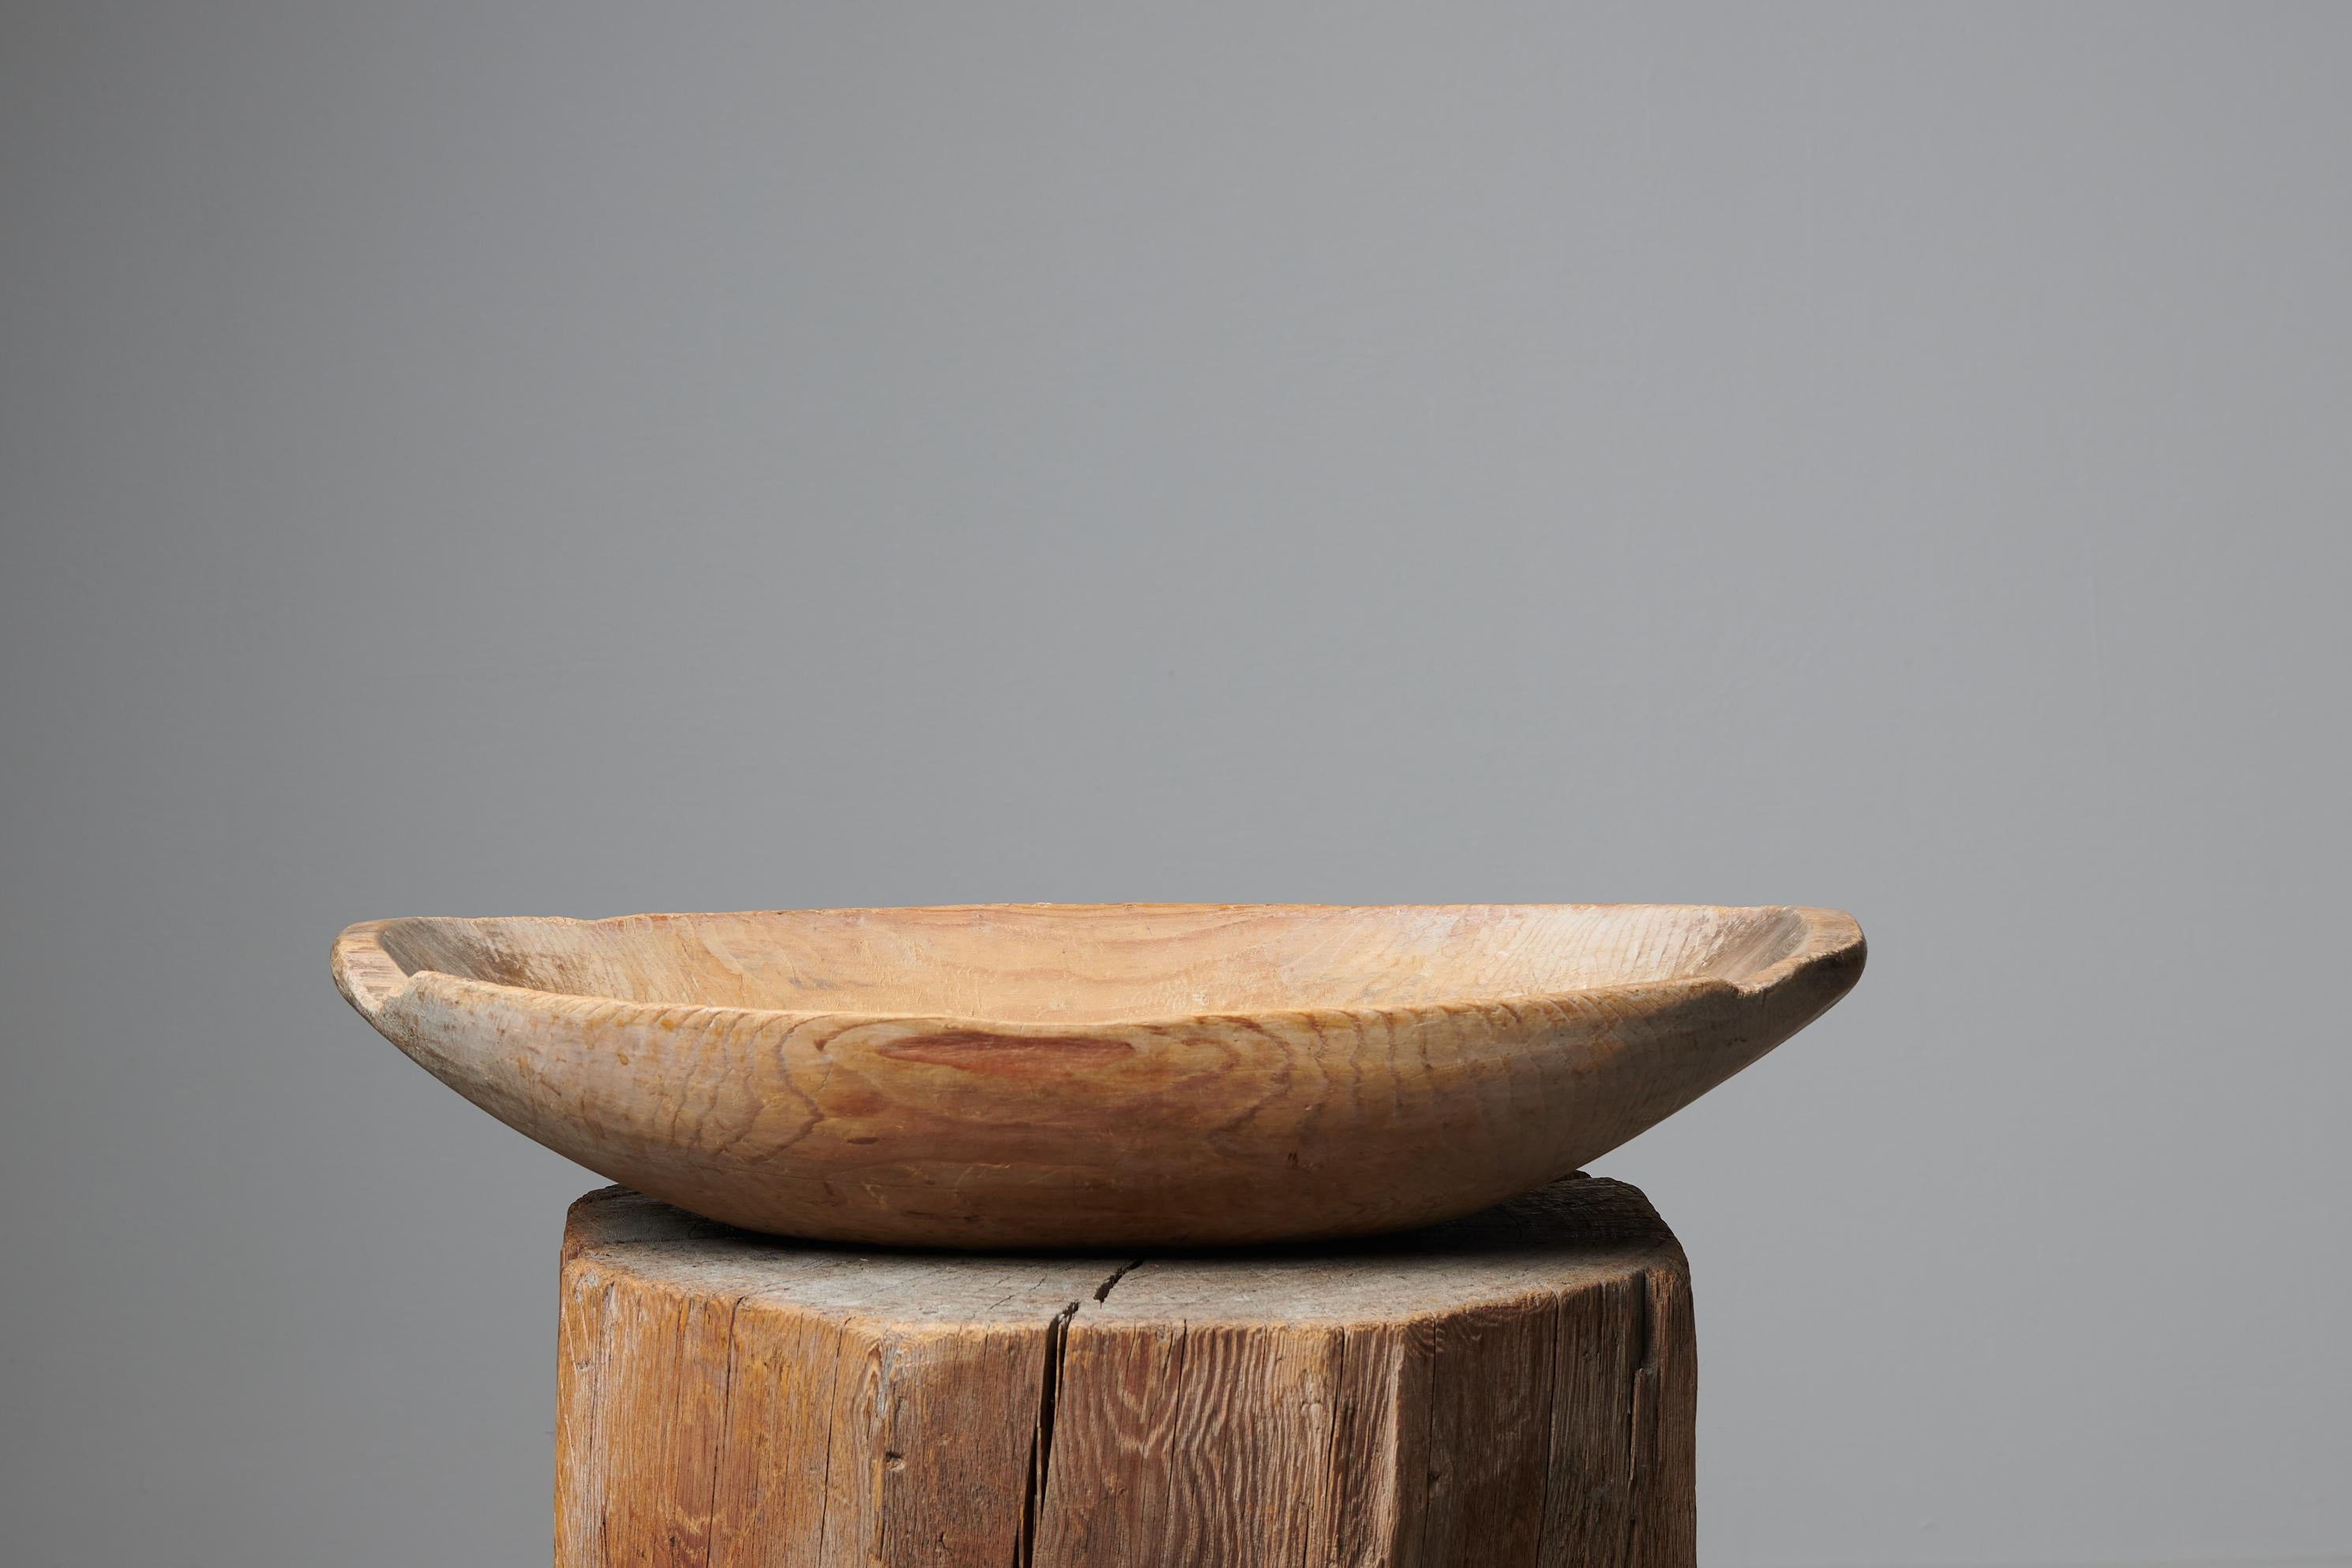 Ancienne coupe en bois d'art populaire suédois fabriquée au milieu des années 1800, vers 1850. Le bol est un objet utilitaire qui était utilisé quotidiennement dans le ménage pour conserver et servir la nourriture. Le pin du bol présente une patine